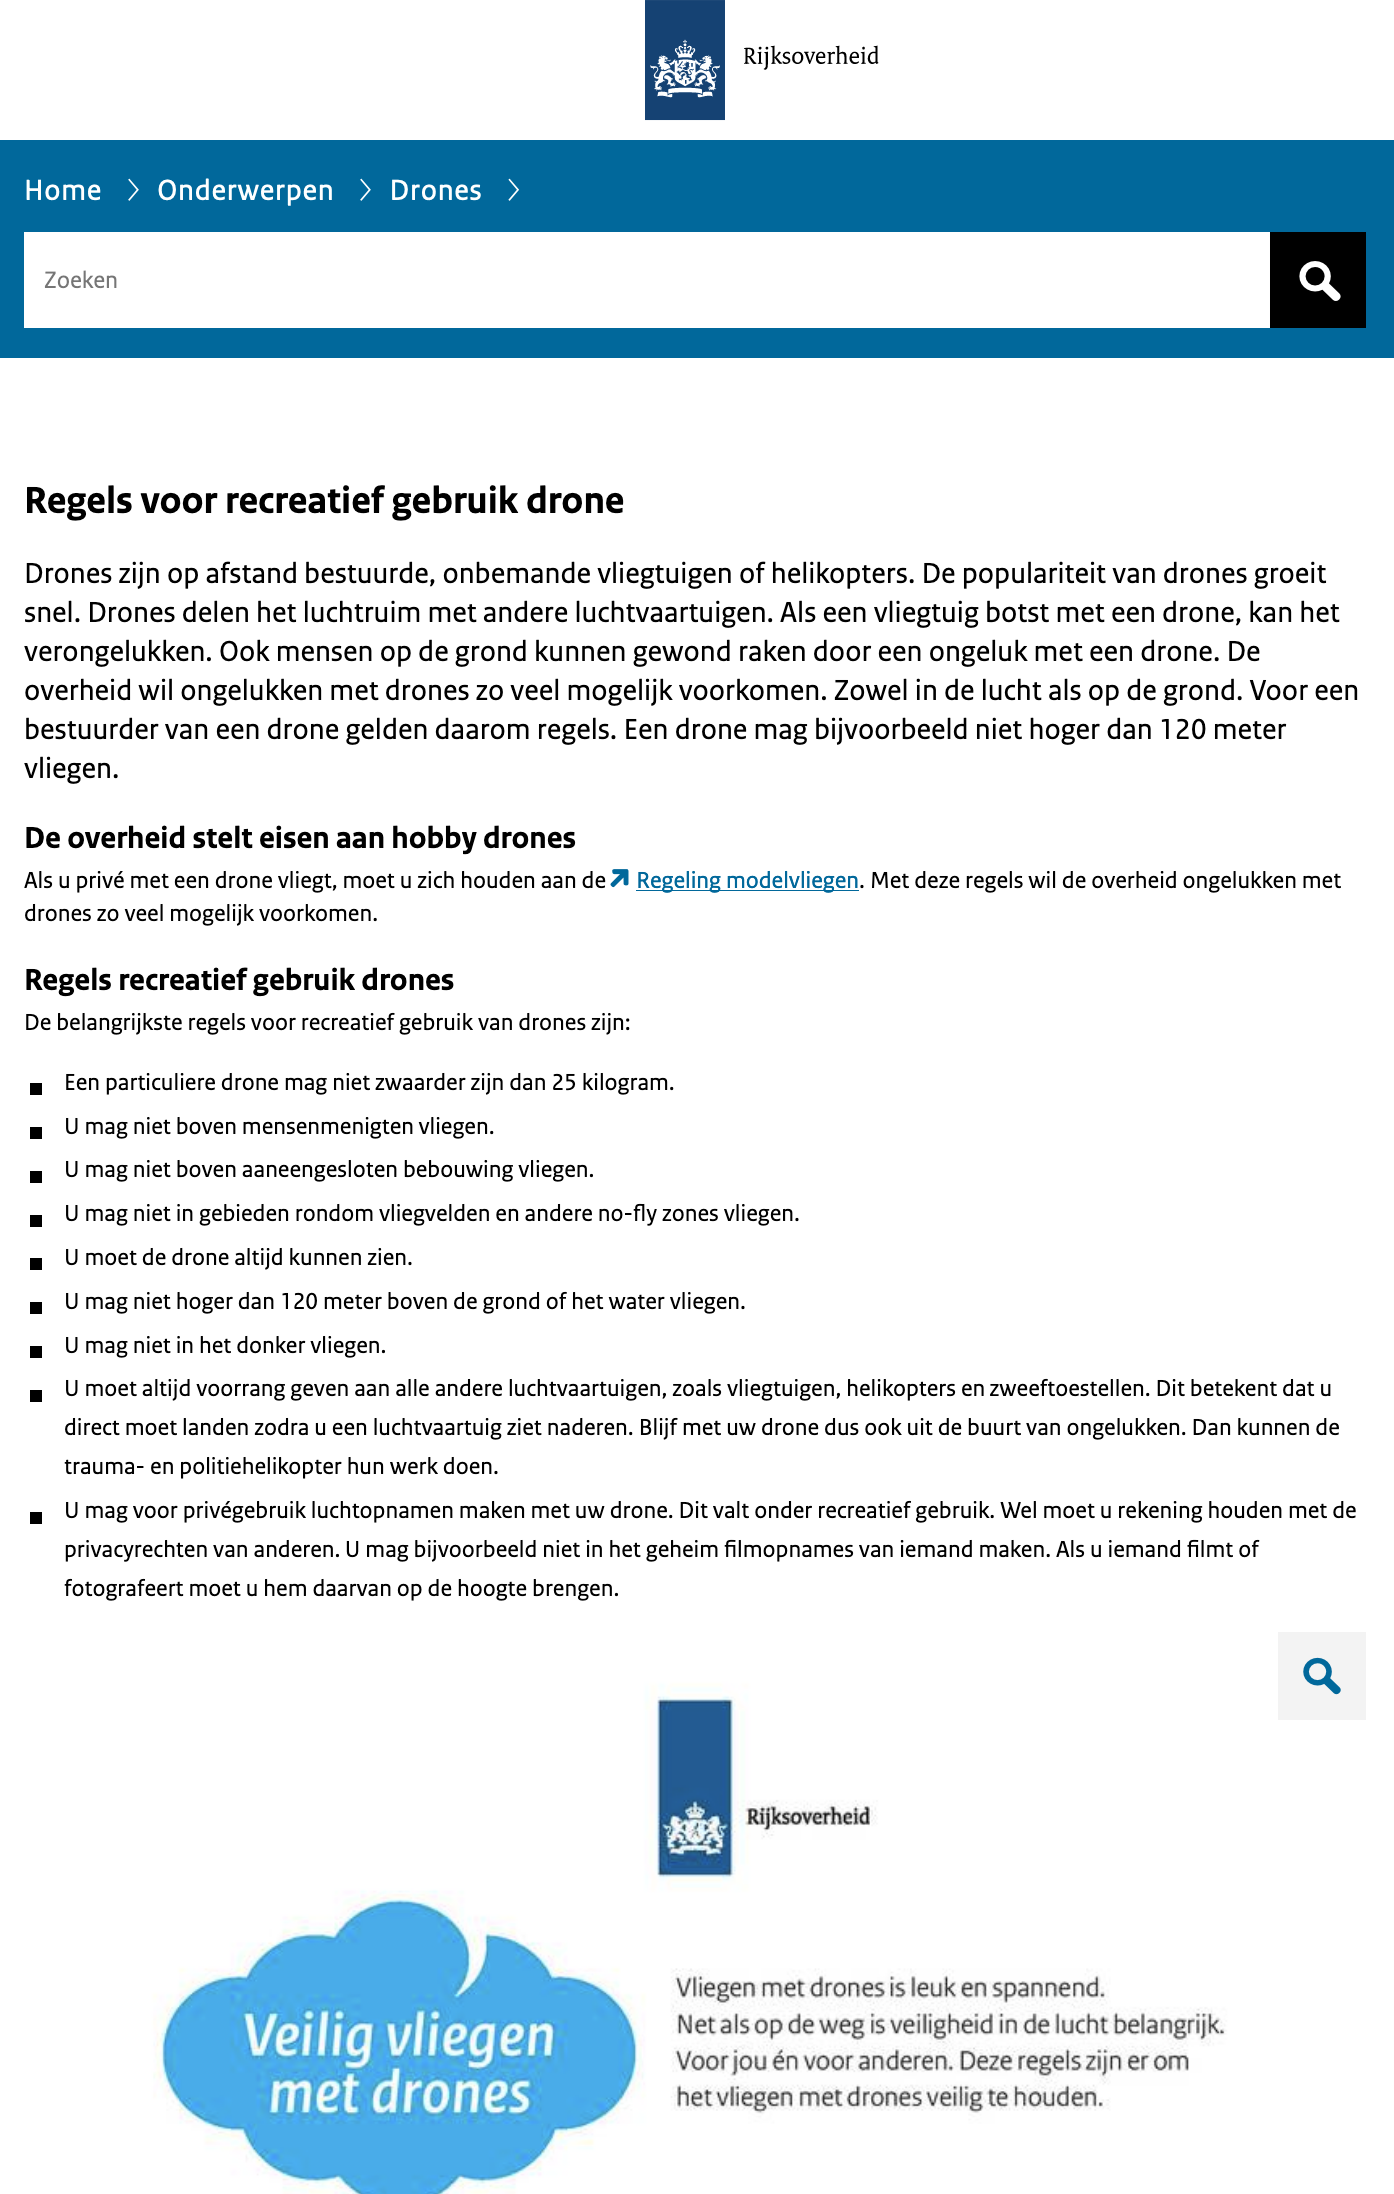 https://www.rijksoverheid.nl/onderwerpen/drone/nieuwe-regels-drones